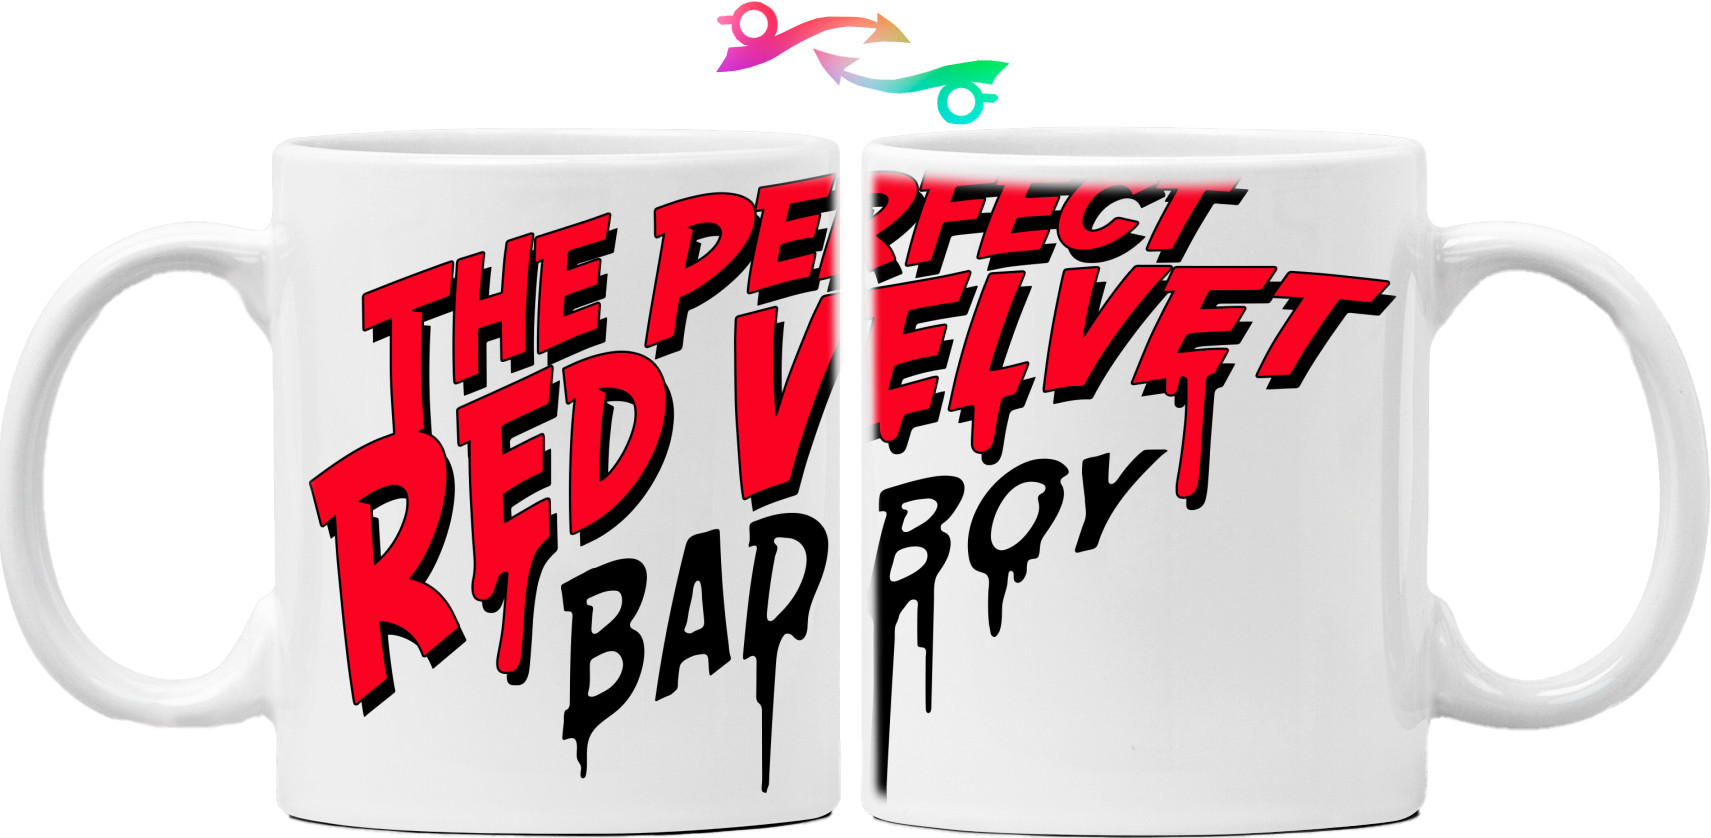 Bad Boy (Red Velvet)